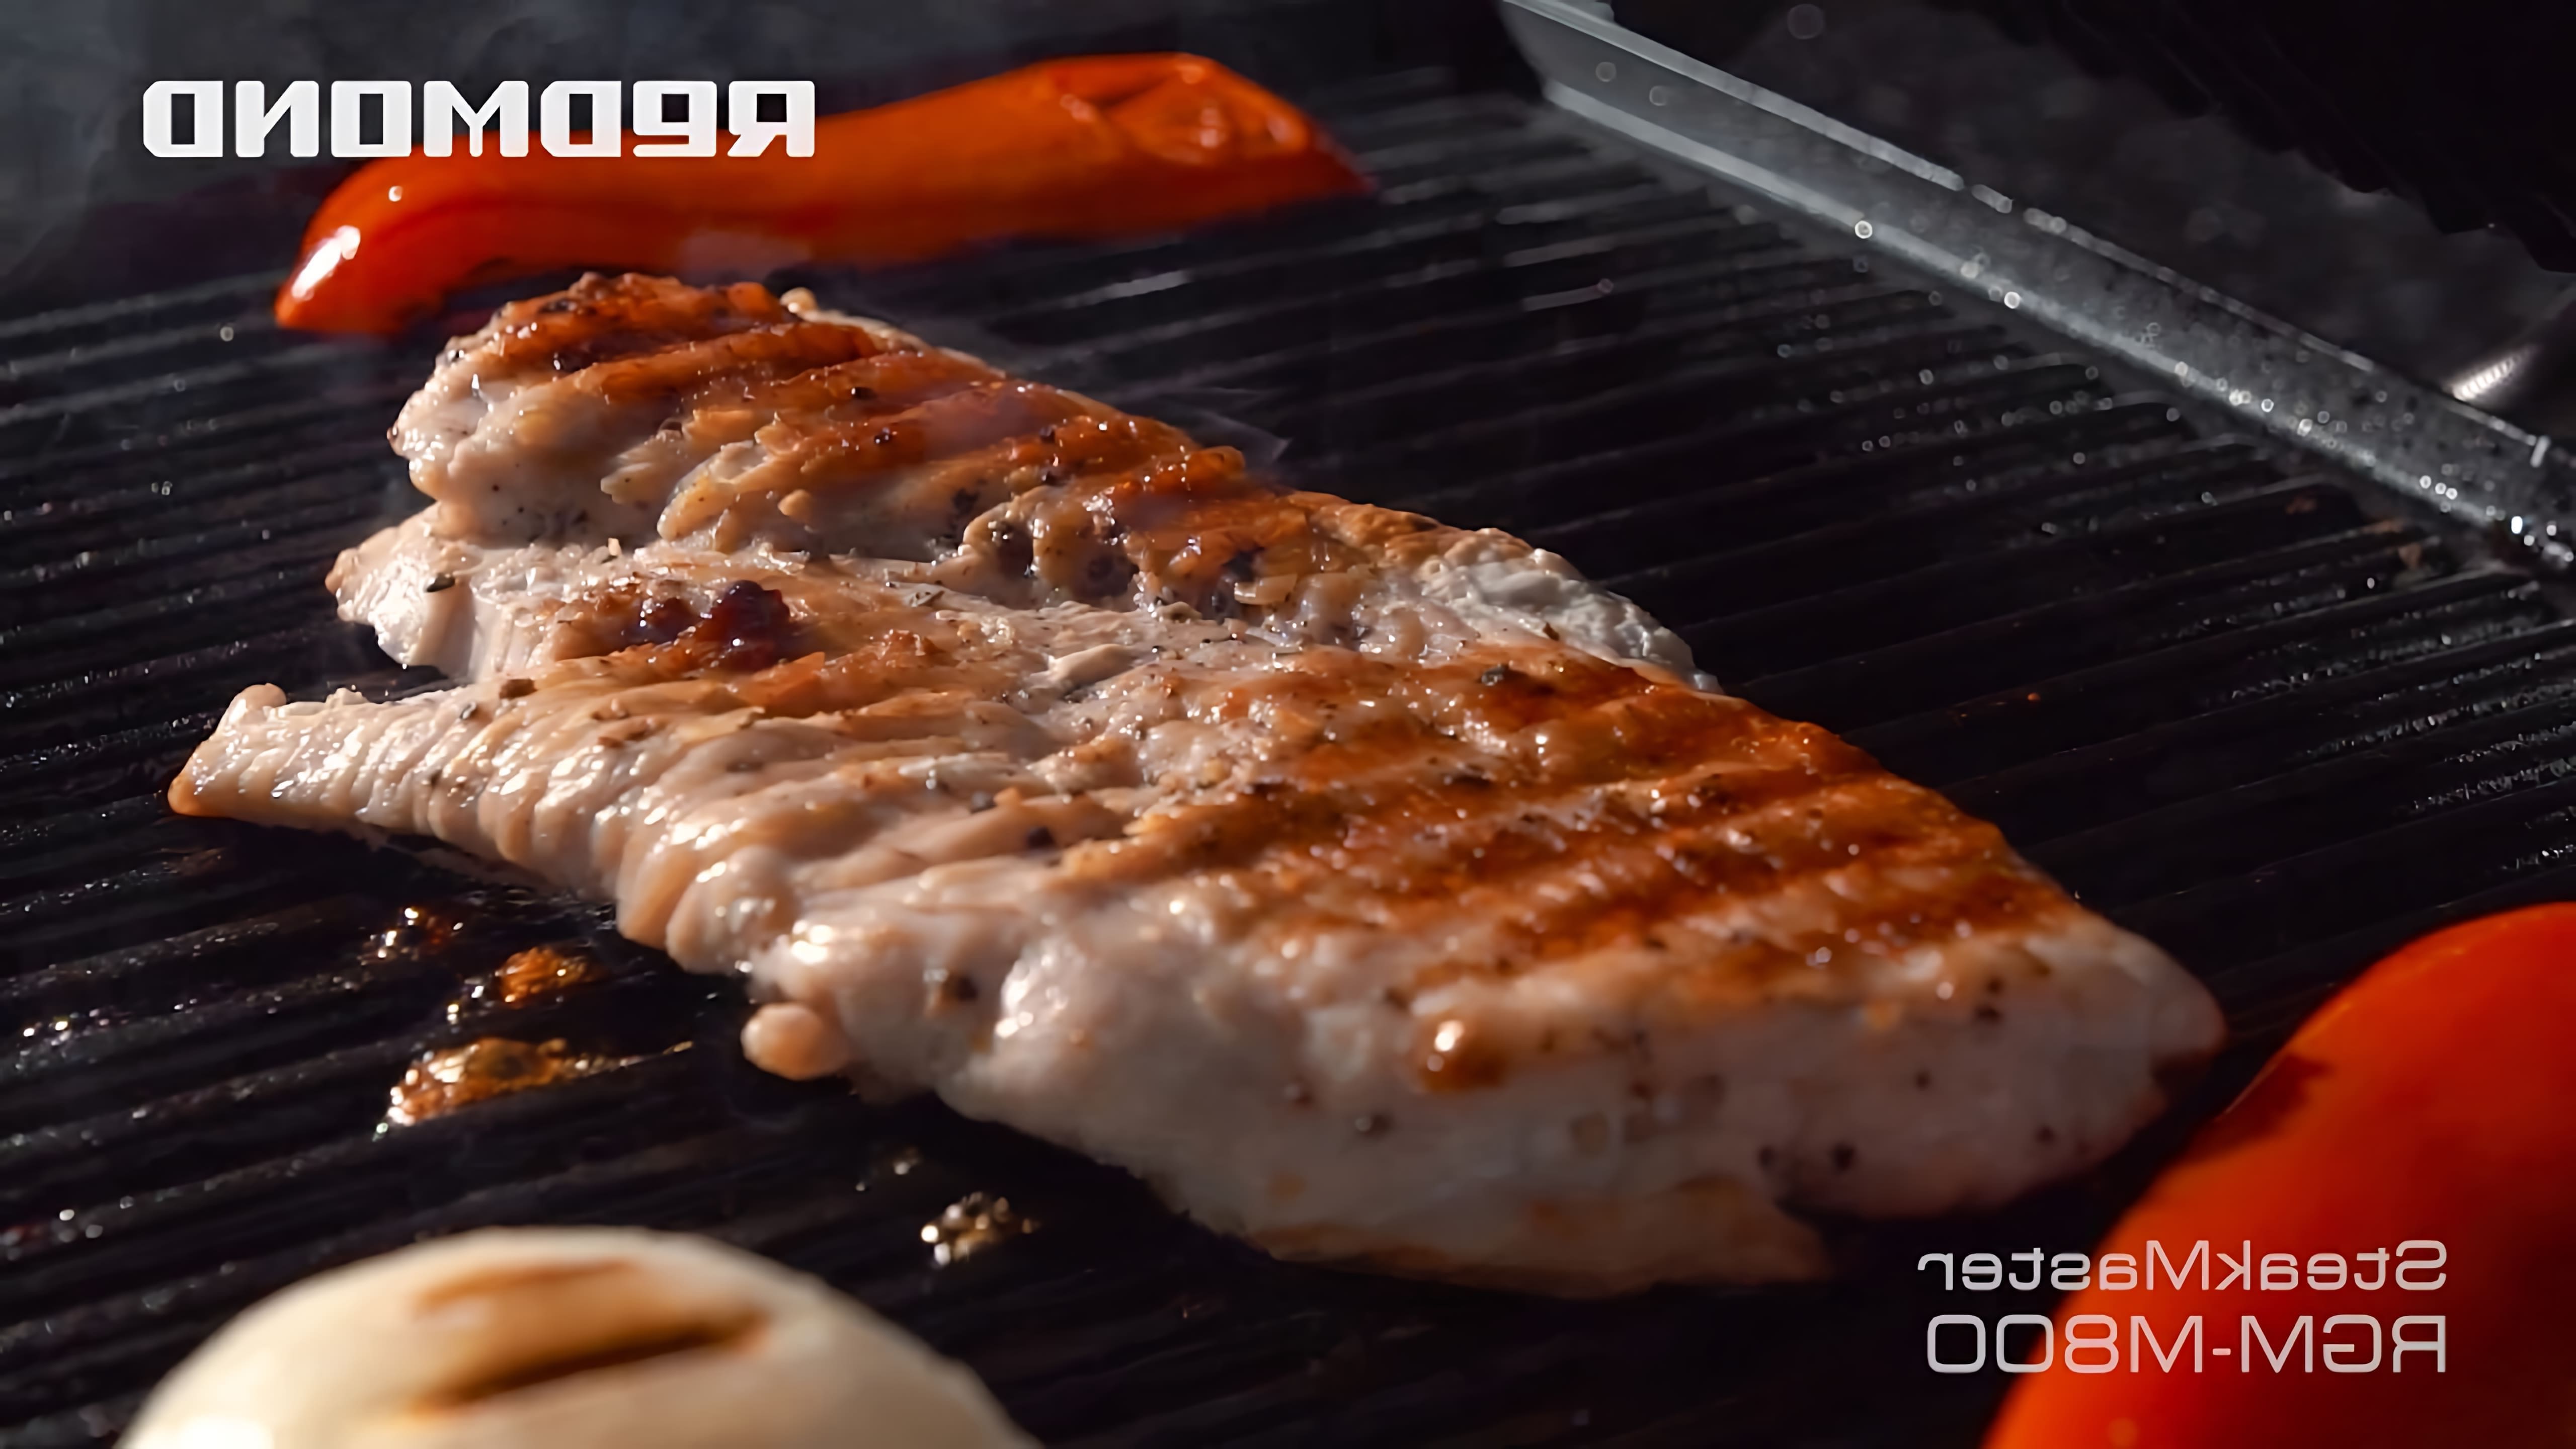 В этом видео демонстрируется процесс приготовления блюда "Филе индейки с овощами" на гриле SteakMaster REDMOND RGM-M800